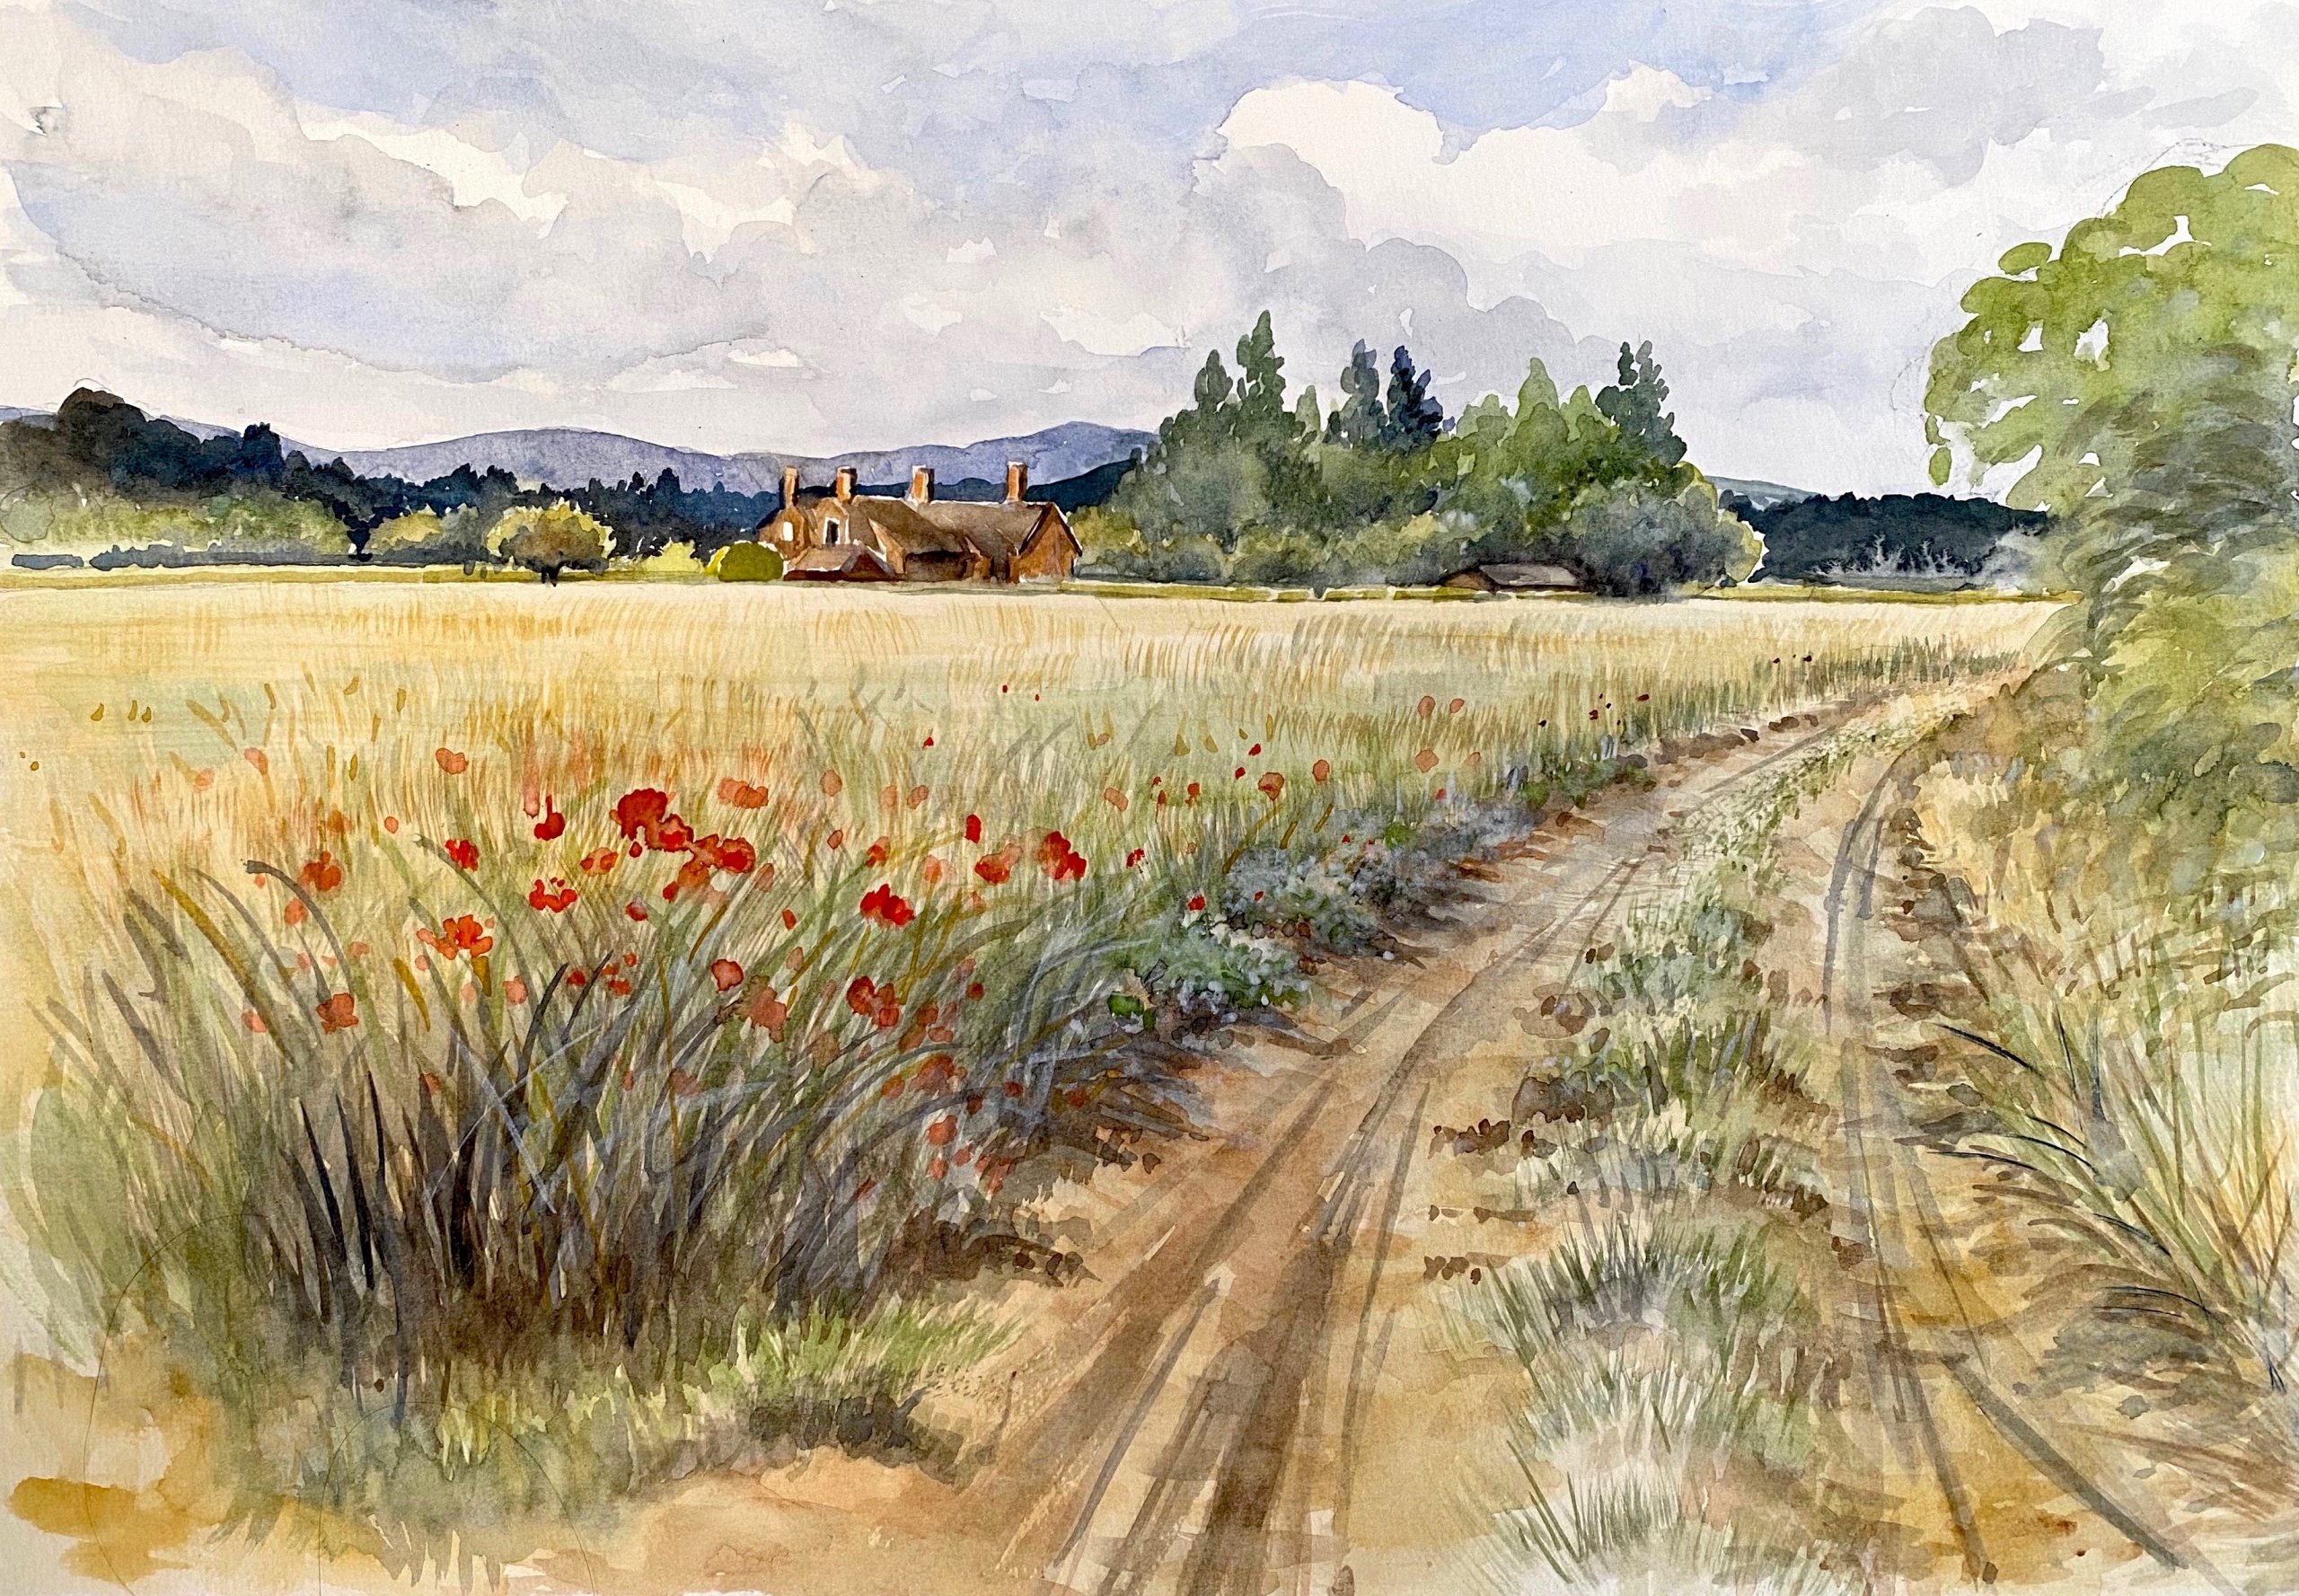 Illustrative Rural Landscape in Watercolour